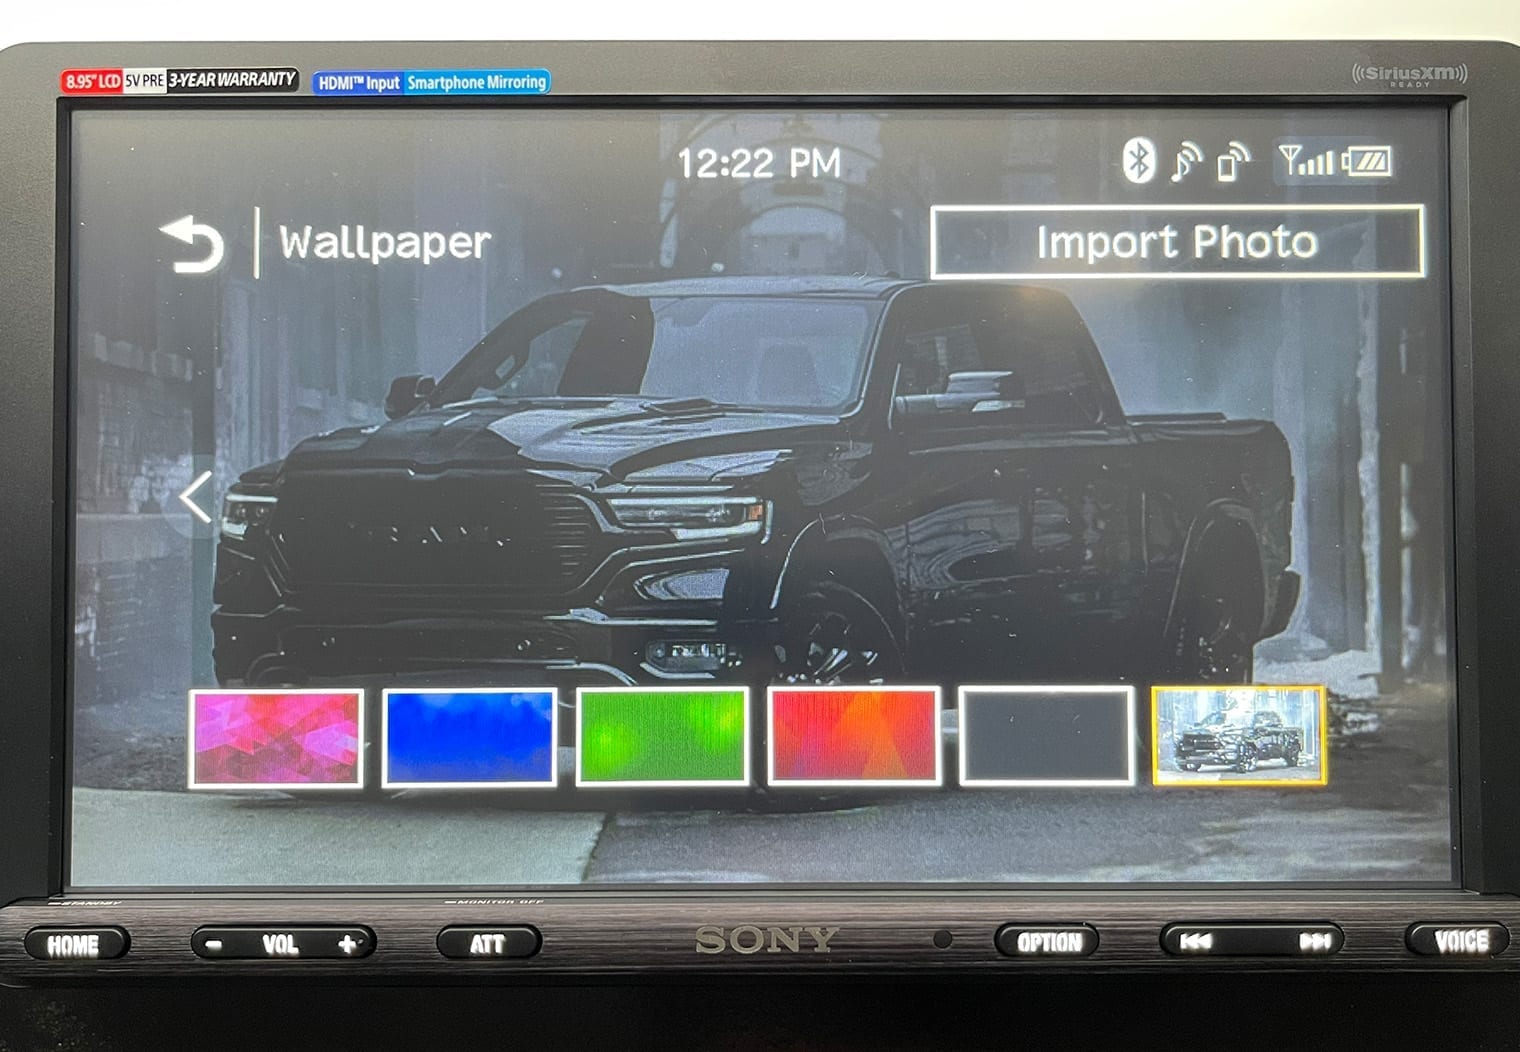 Sony XAV-AX8100 confirmed wallpaper